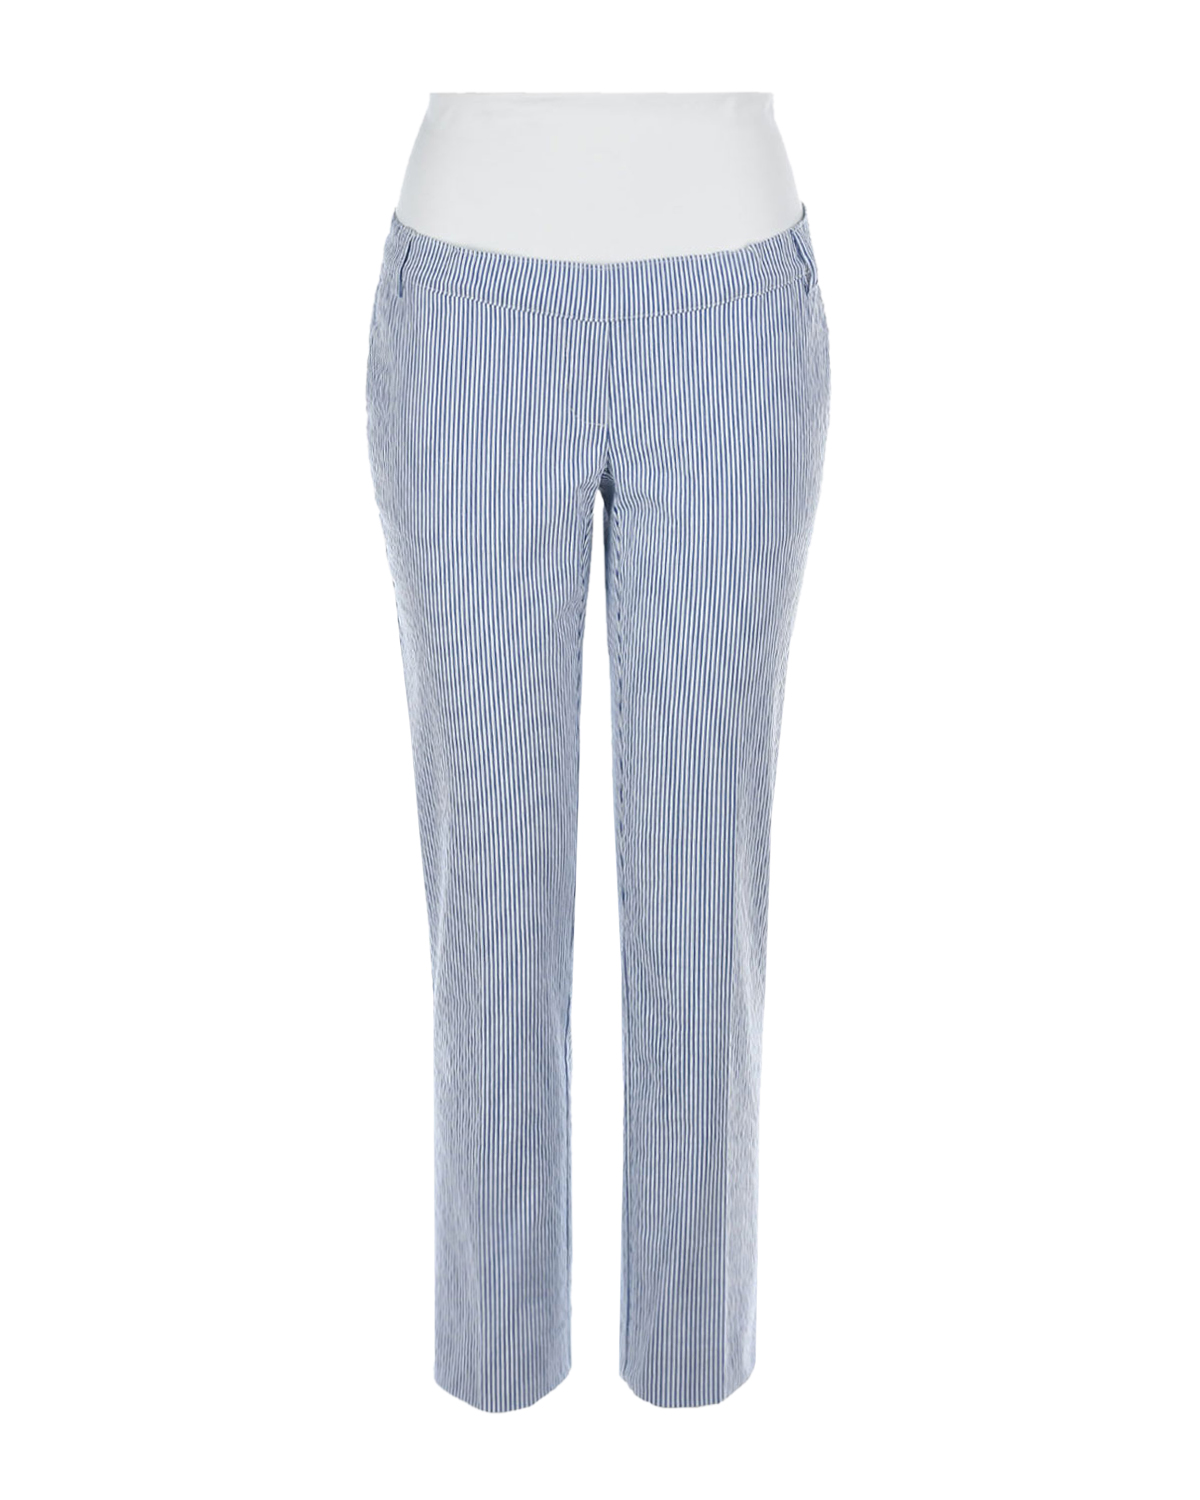 Голубые брюки-капри для беременных Pietro Brunelli, размер 38, цвет голубой